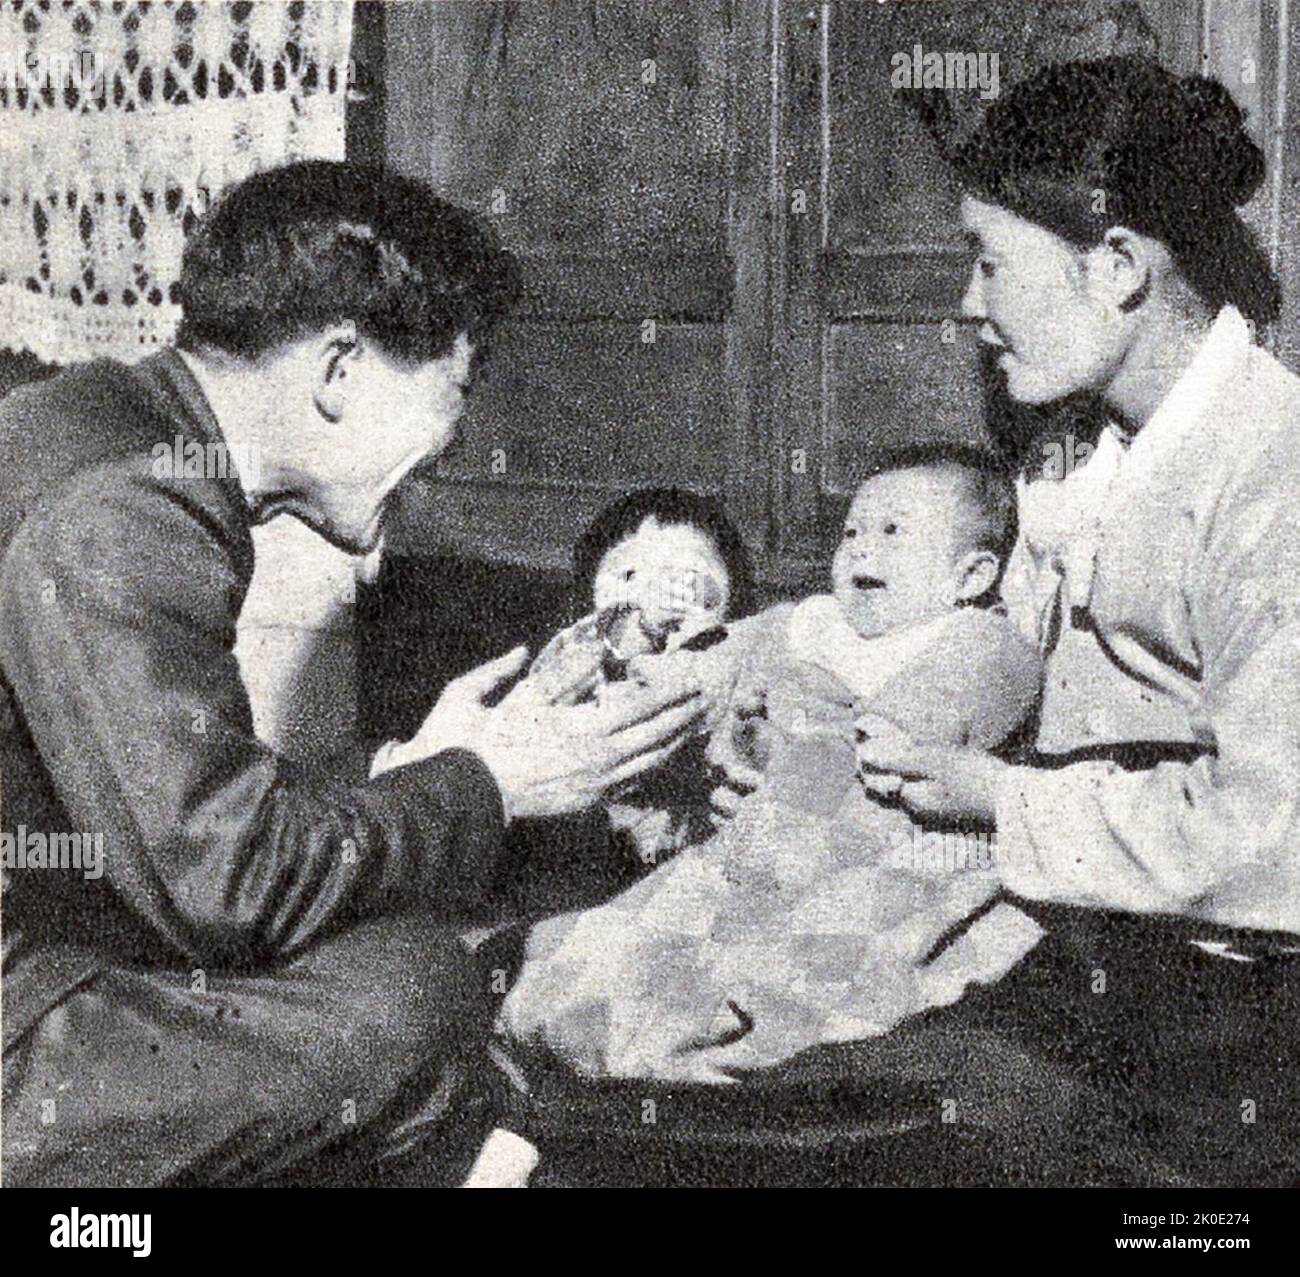 Fotografía de propaganda norcoreana de una familia de contenido saludable. 1964 Foto de stock